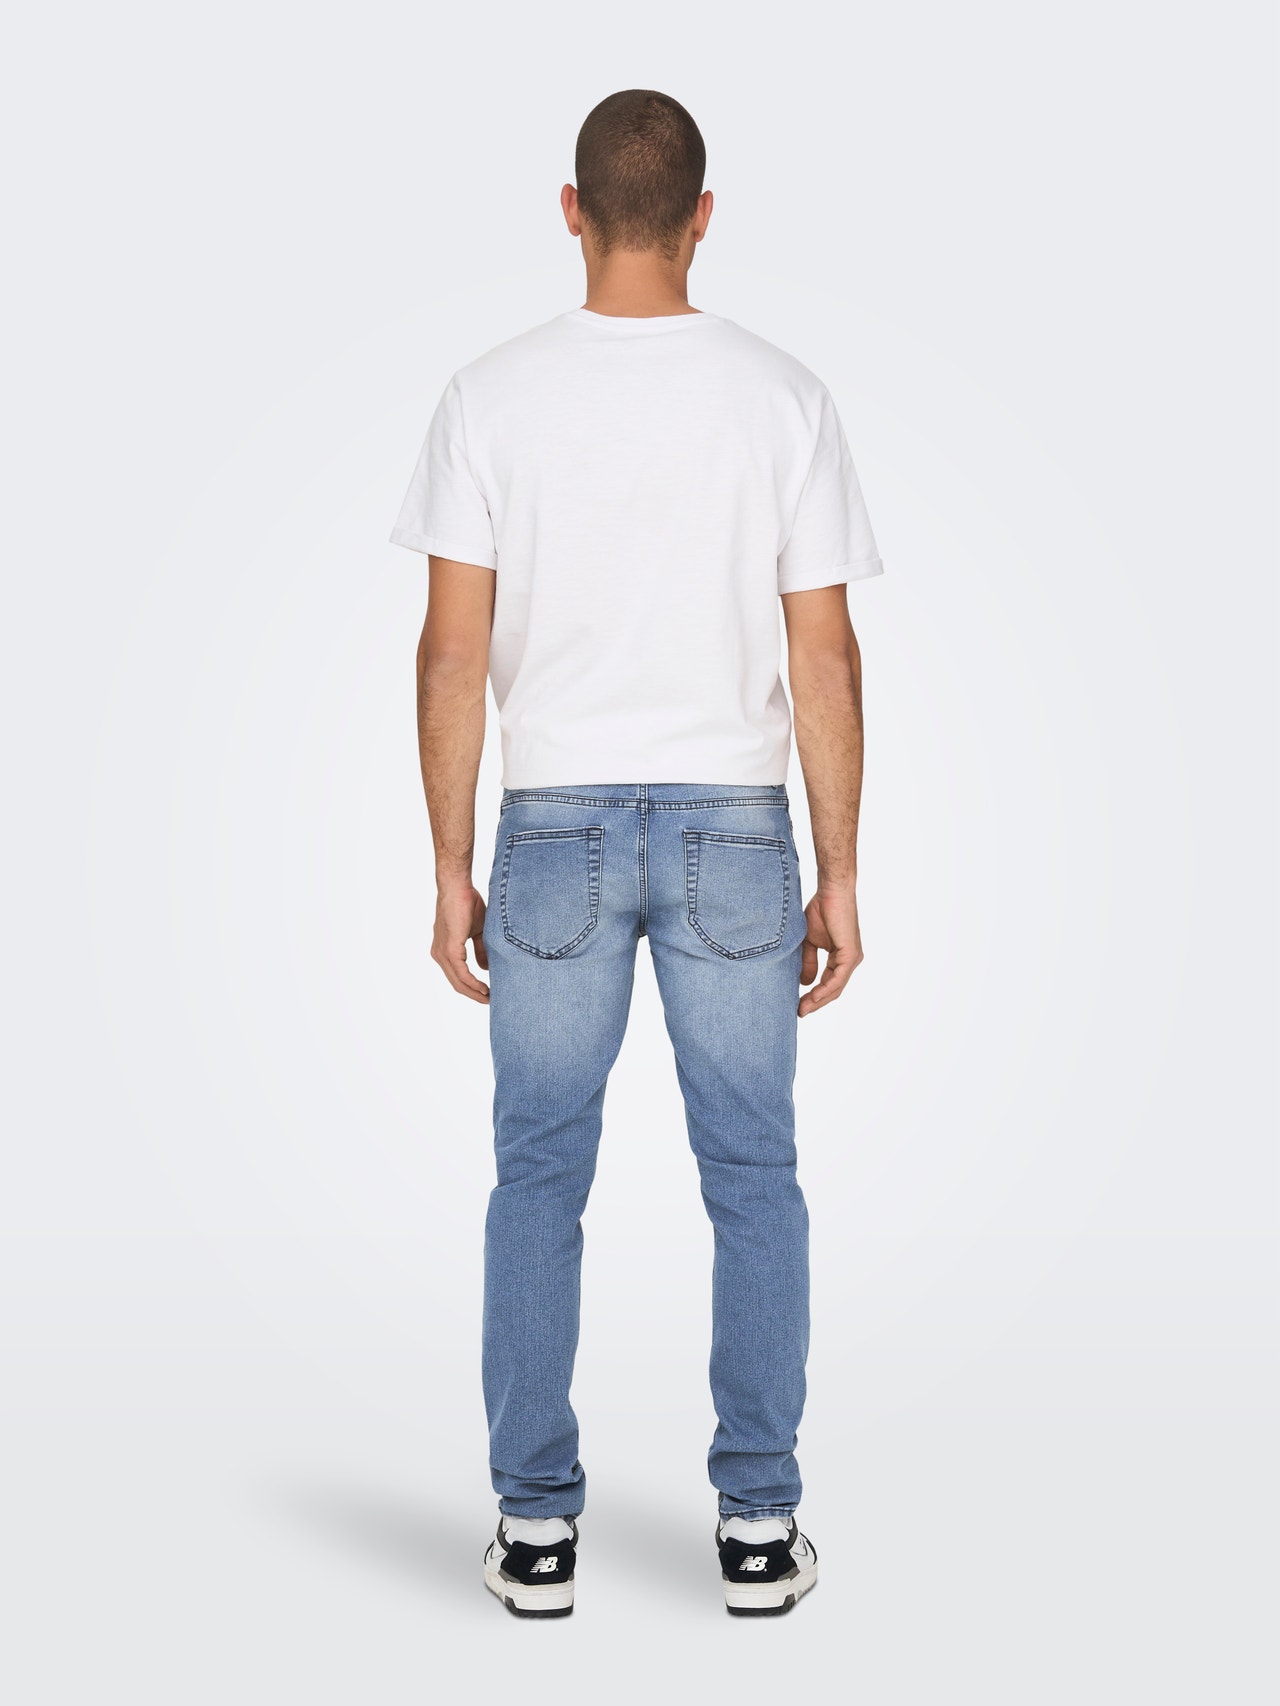 ONLY & SONS Jeans Slim Fit Taille classique -Medium Blue Denim - 22026619